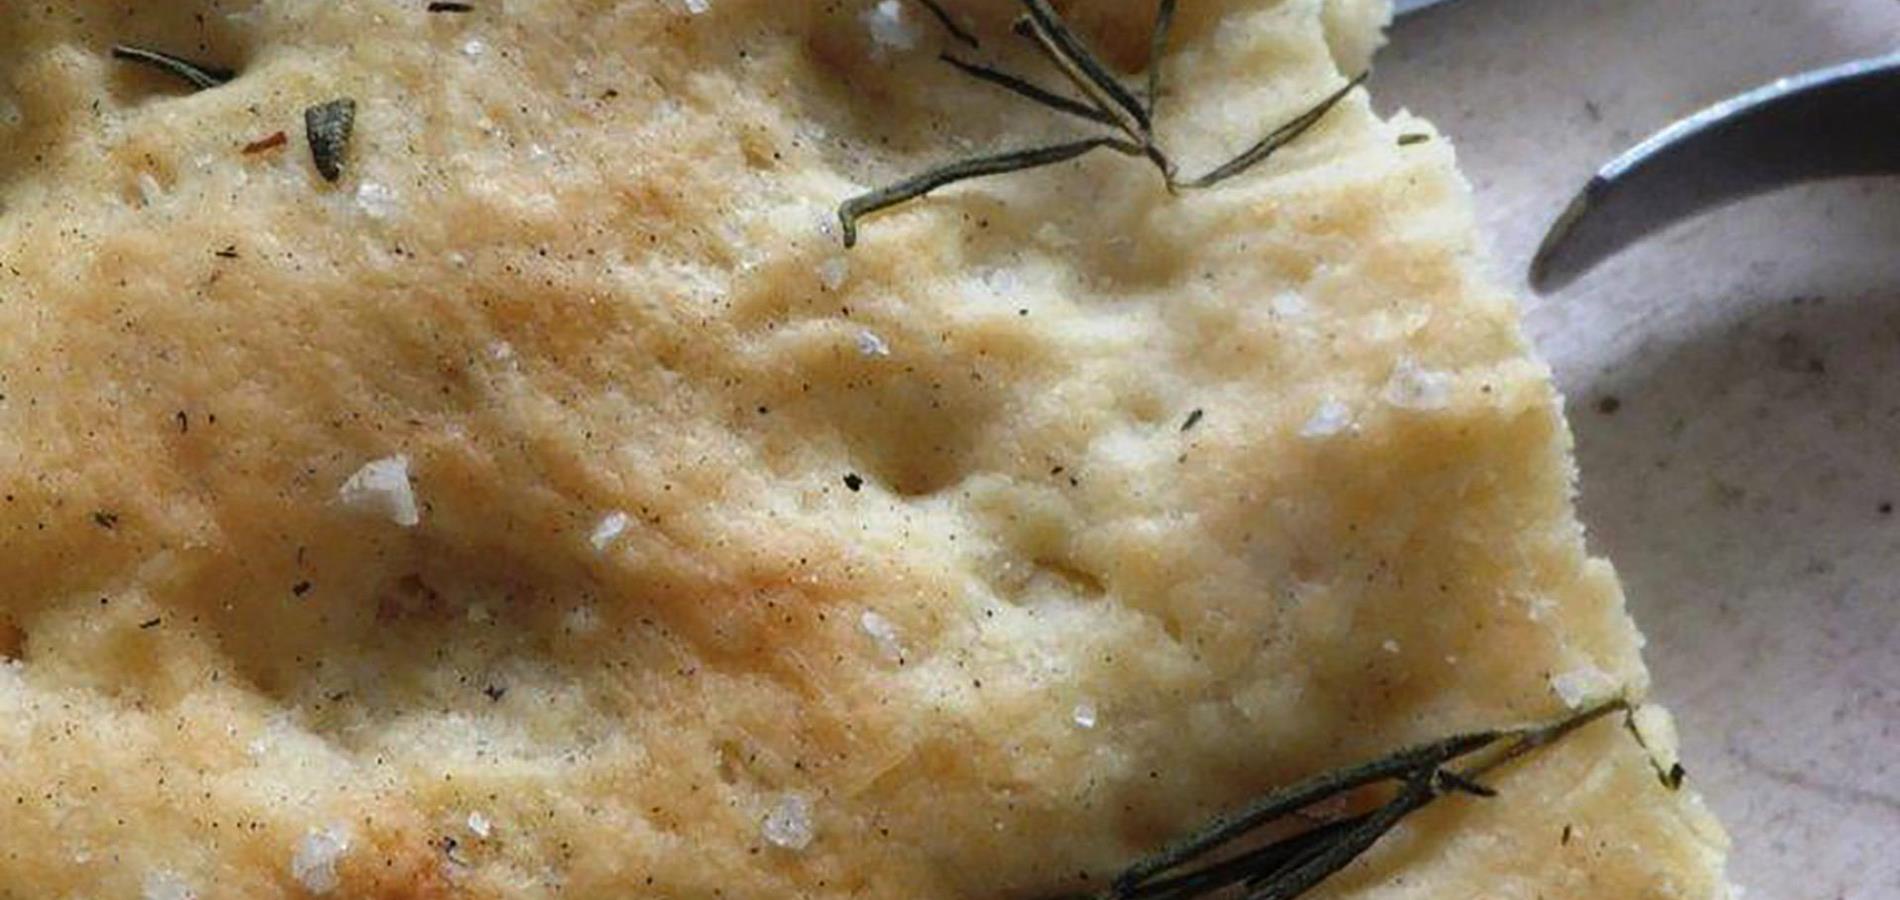 Focaccia - Italian flatbread